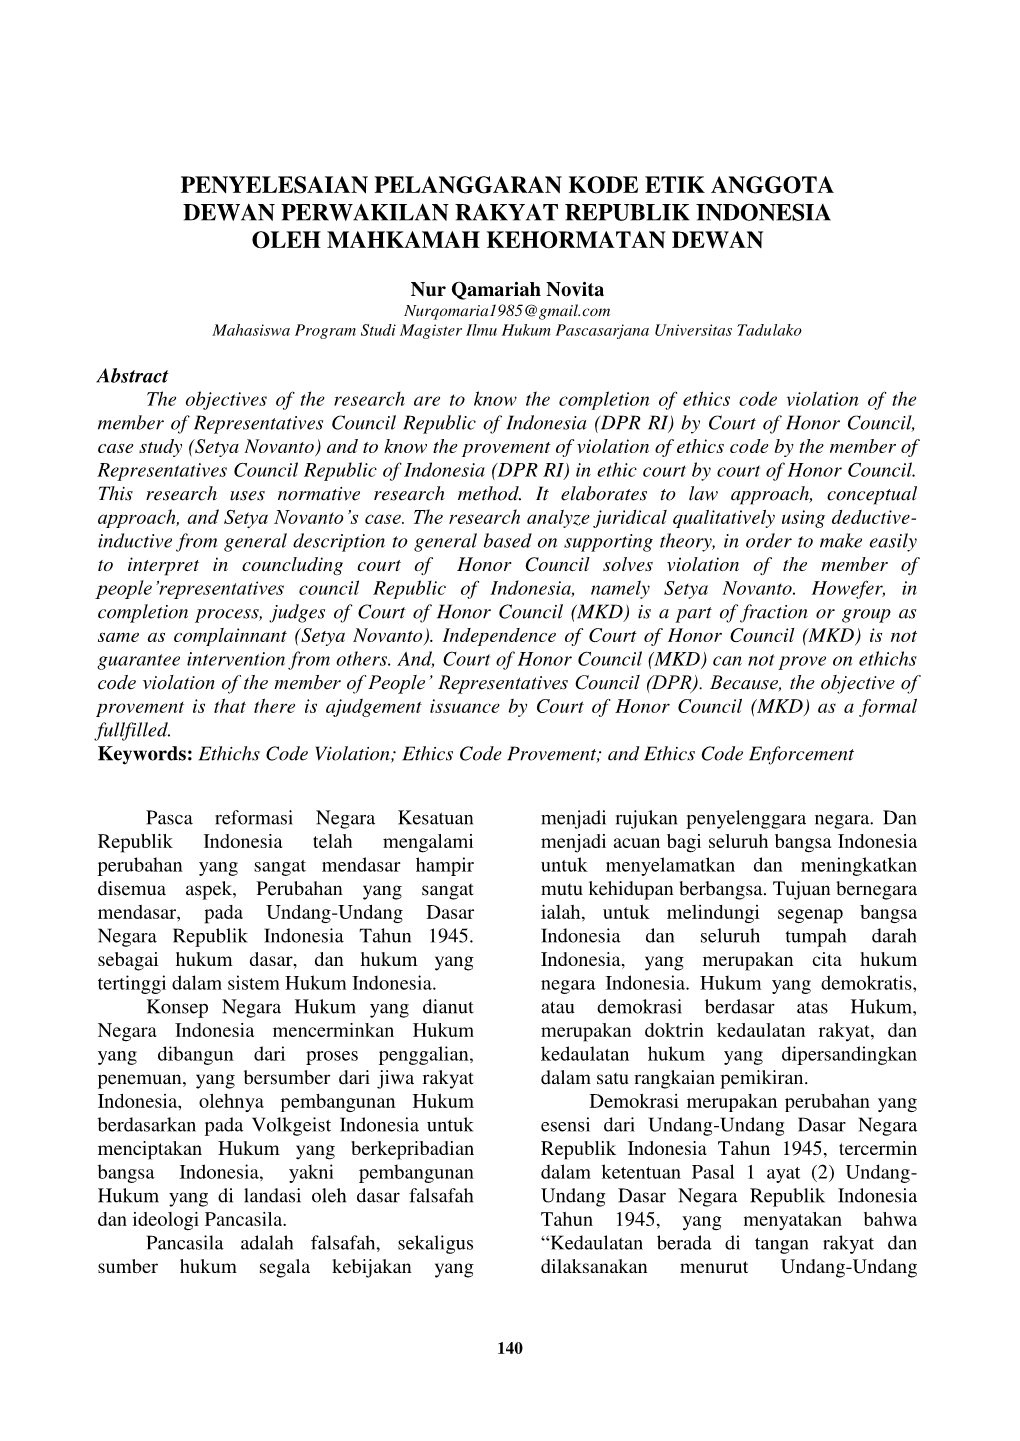 Penyelesaian Pelanggaran Kode Etik Anggota Dewan Perwakilan Rakyat Republik Indonesia Oleh Mahkamah Kehormatan Dewan